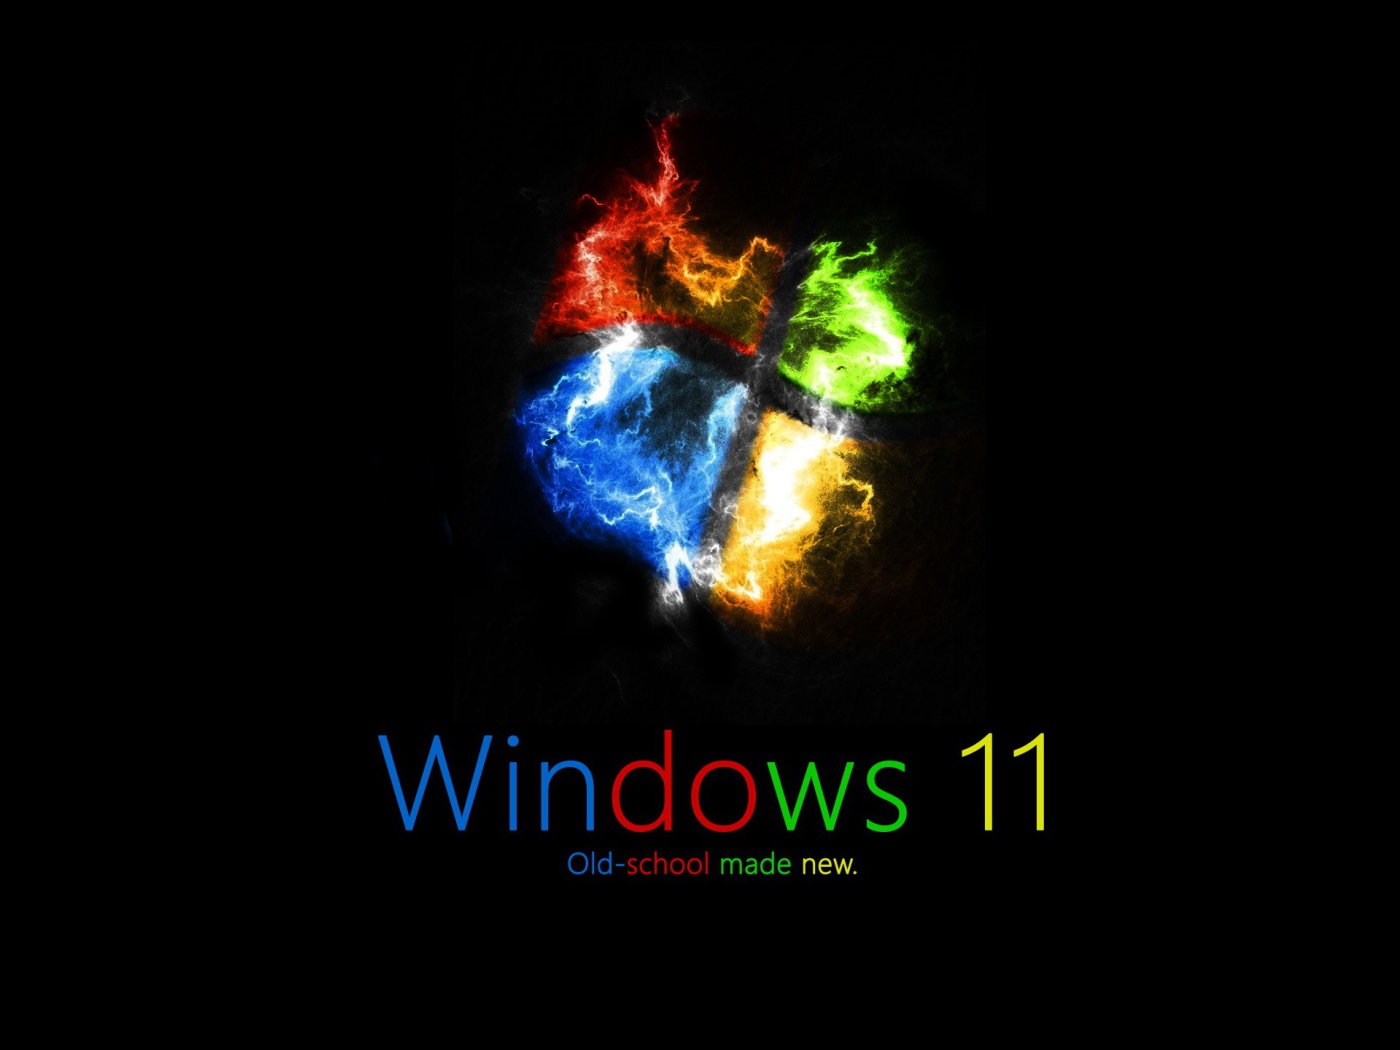 Заставка операционной системы WINDOWS 11 на черном фоне